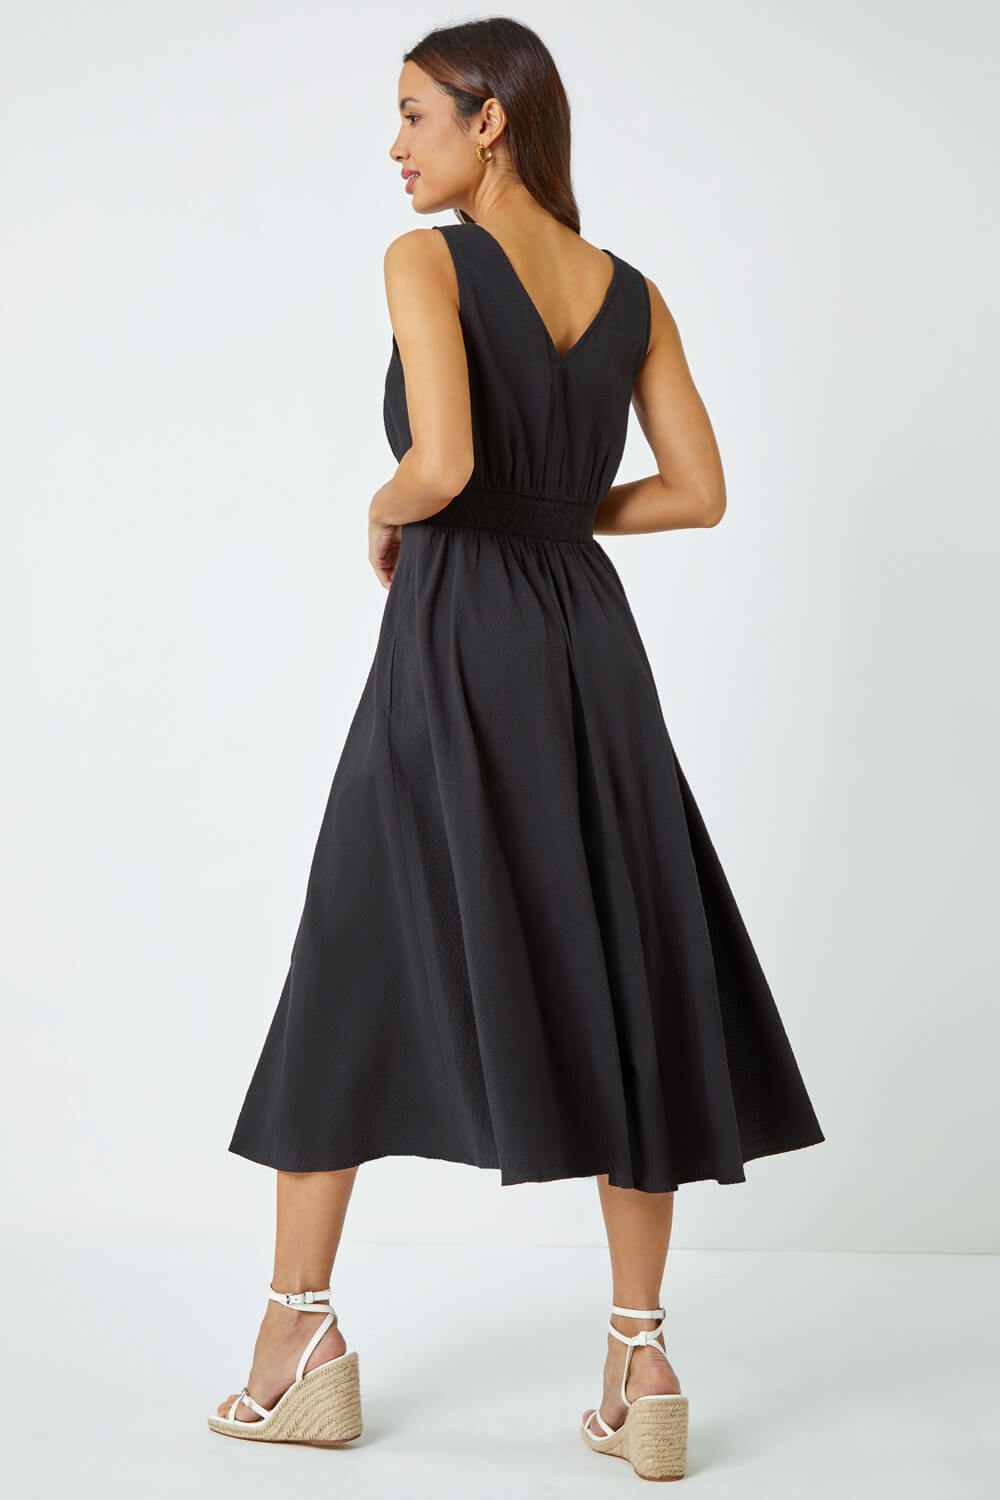 Black Sleeveless Button Detail Cotton Midi Dress, Image 3 of 5